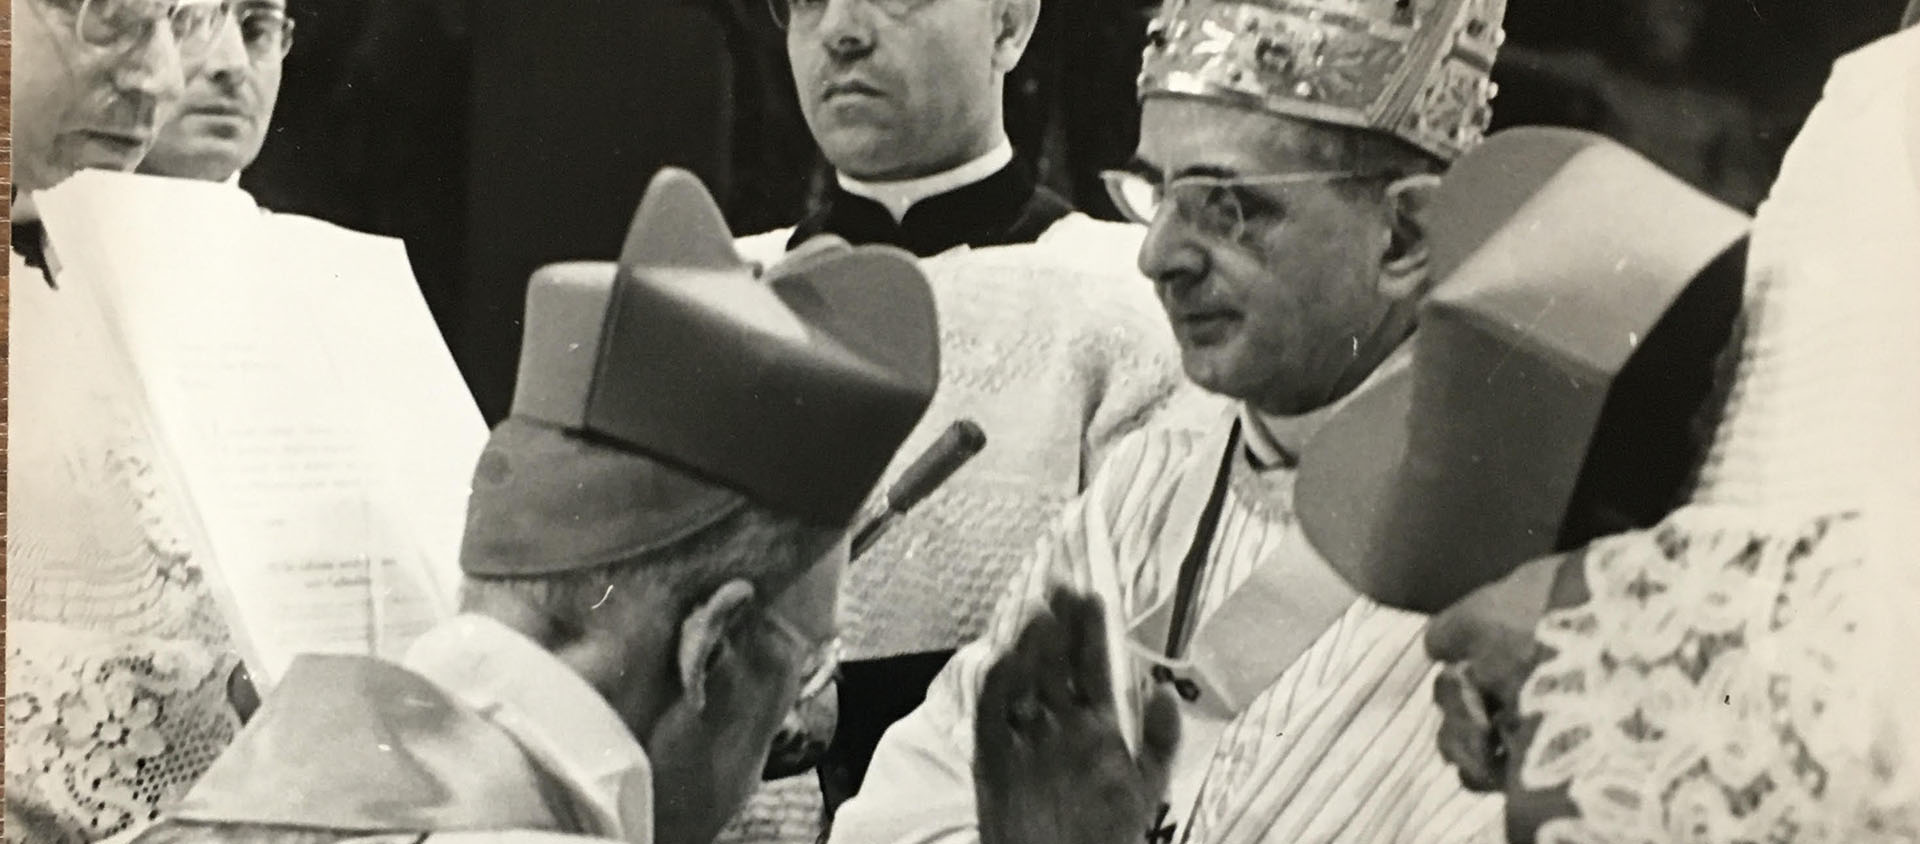 Charles Journet reçoit la barrette cardinalice des mains de Paul VI lors du Consistoire du 25 février 1965 | © Fondation cardinal Journet